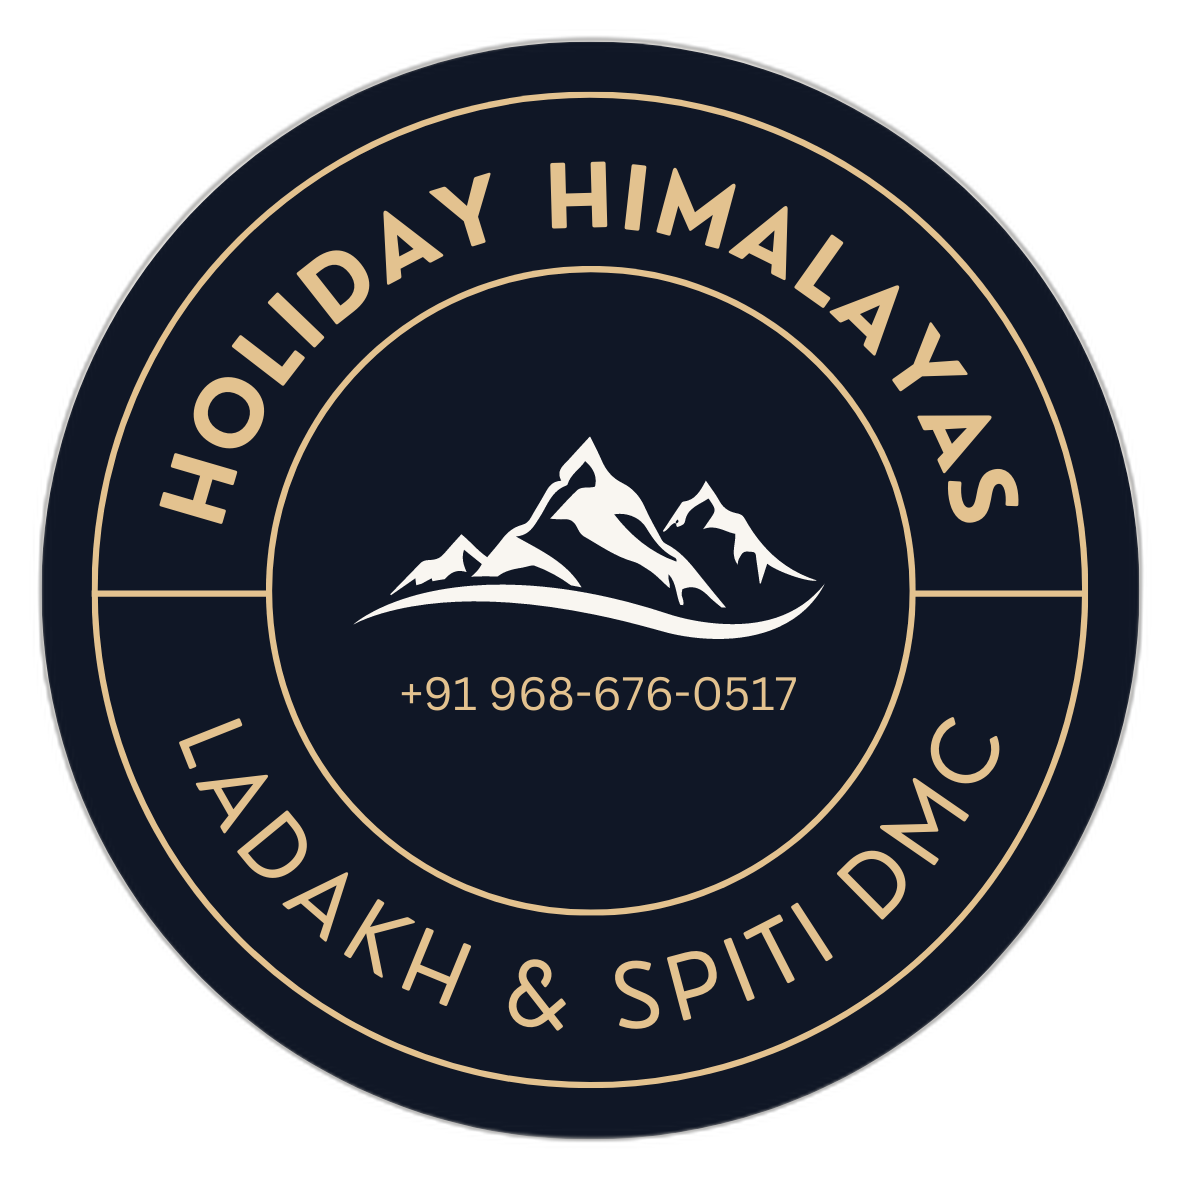 Holiday Himalayas